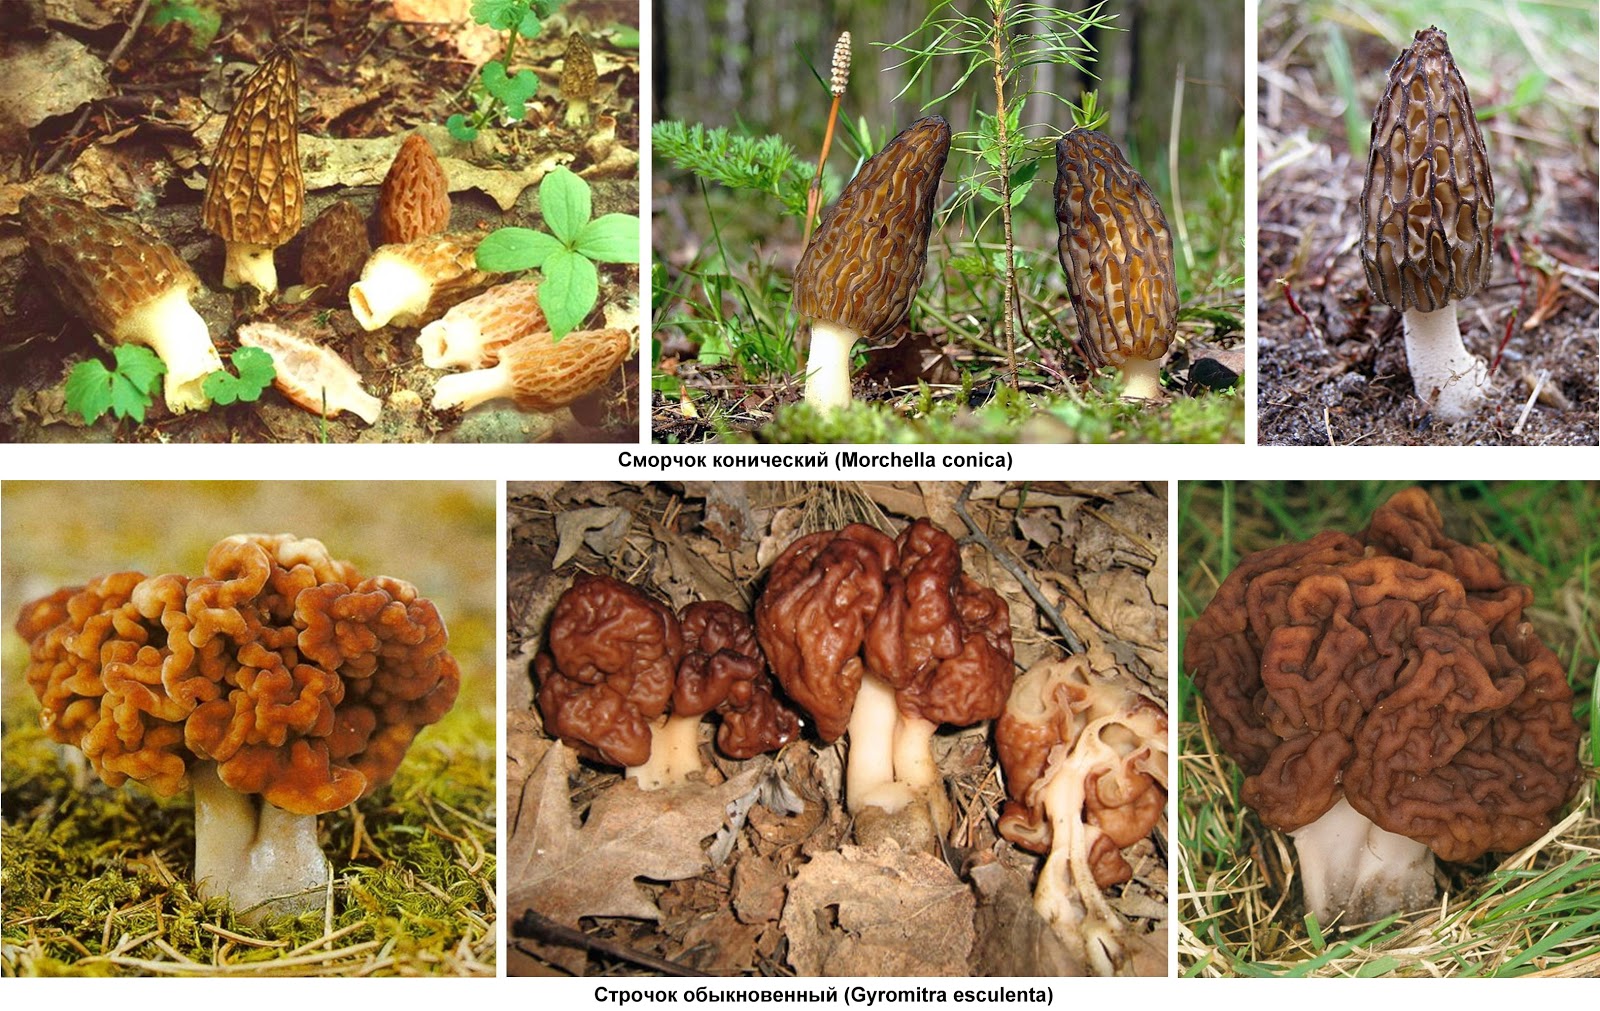 Сморчки грибы фото съедобные и несъедобные чем отличаются как готовить